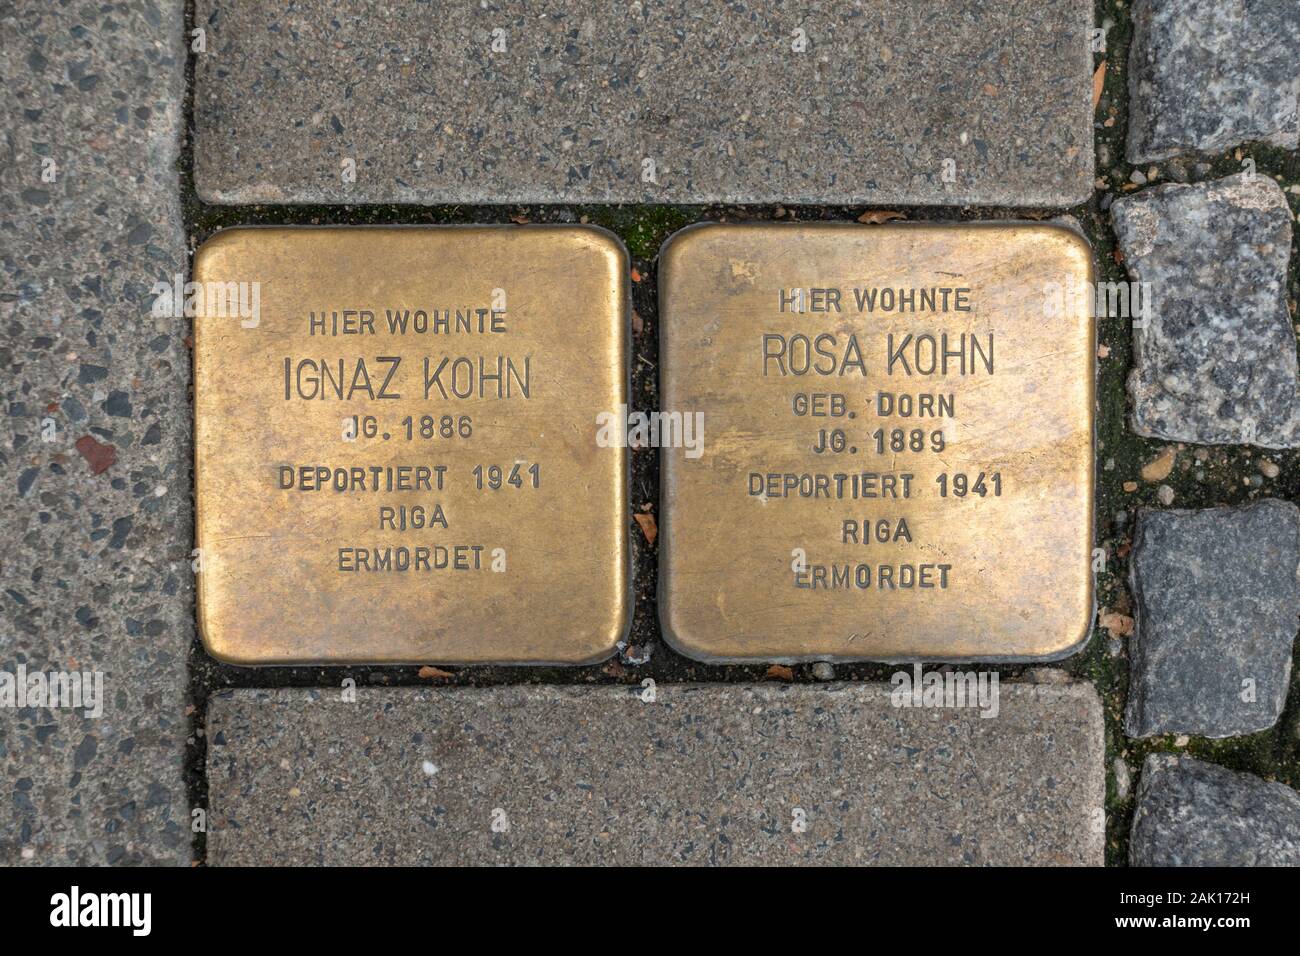 Marqueurs commémoratifs de l'Holocauste 'pierres tumblings' pour Ignaz Kohn et Rosa Kohn à Coburg, Bavière, Allemagne. Banque D'Images